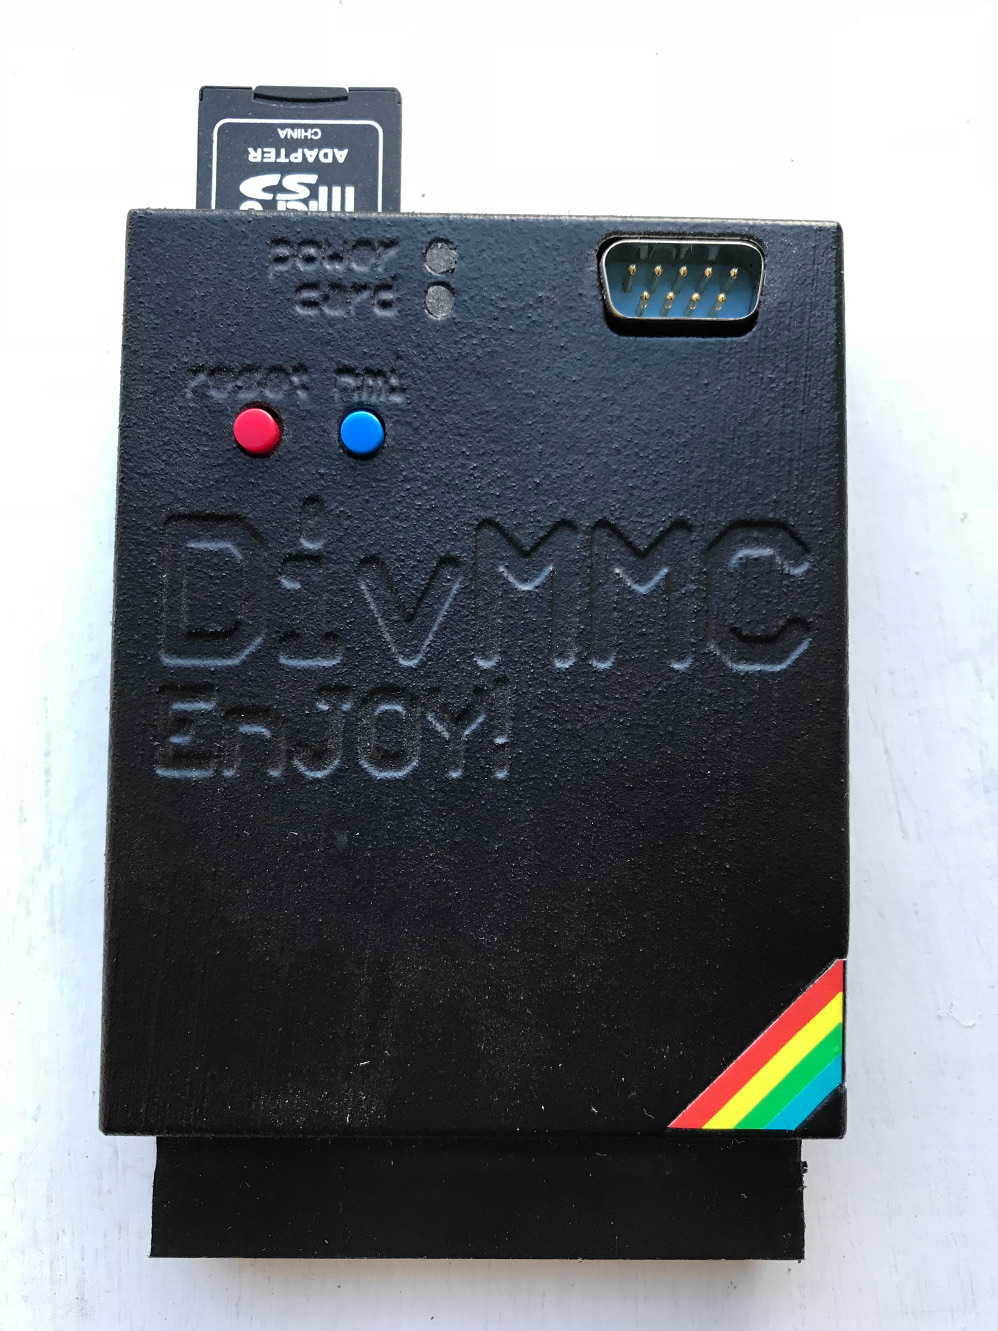 Sinclair ZX Spectrum - DivMMC Enjoy